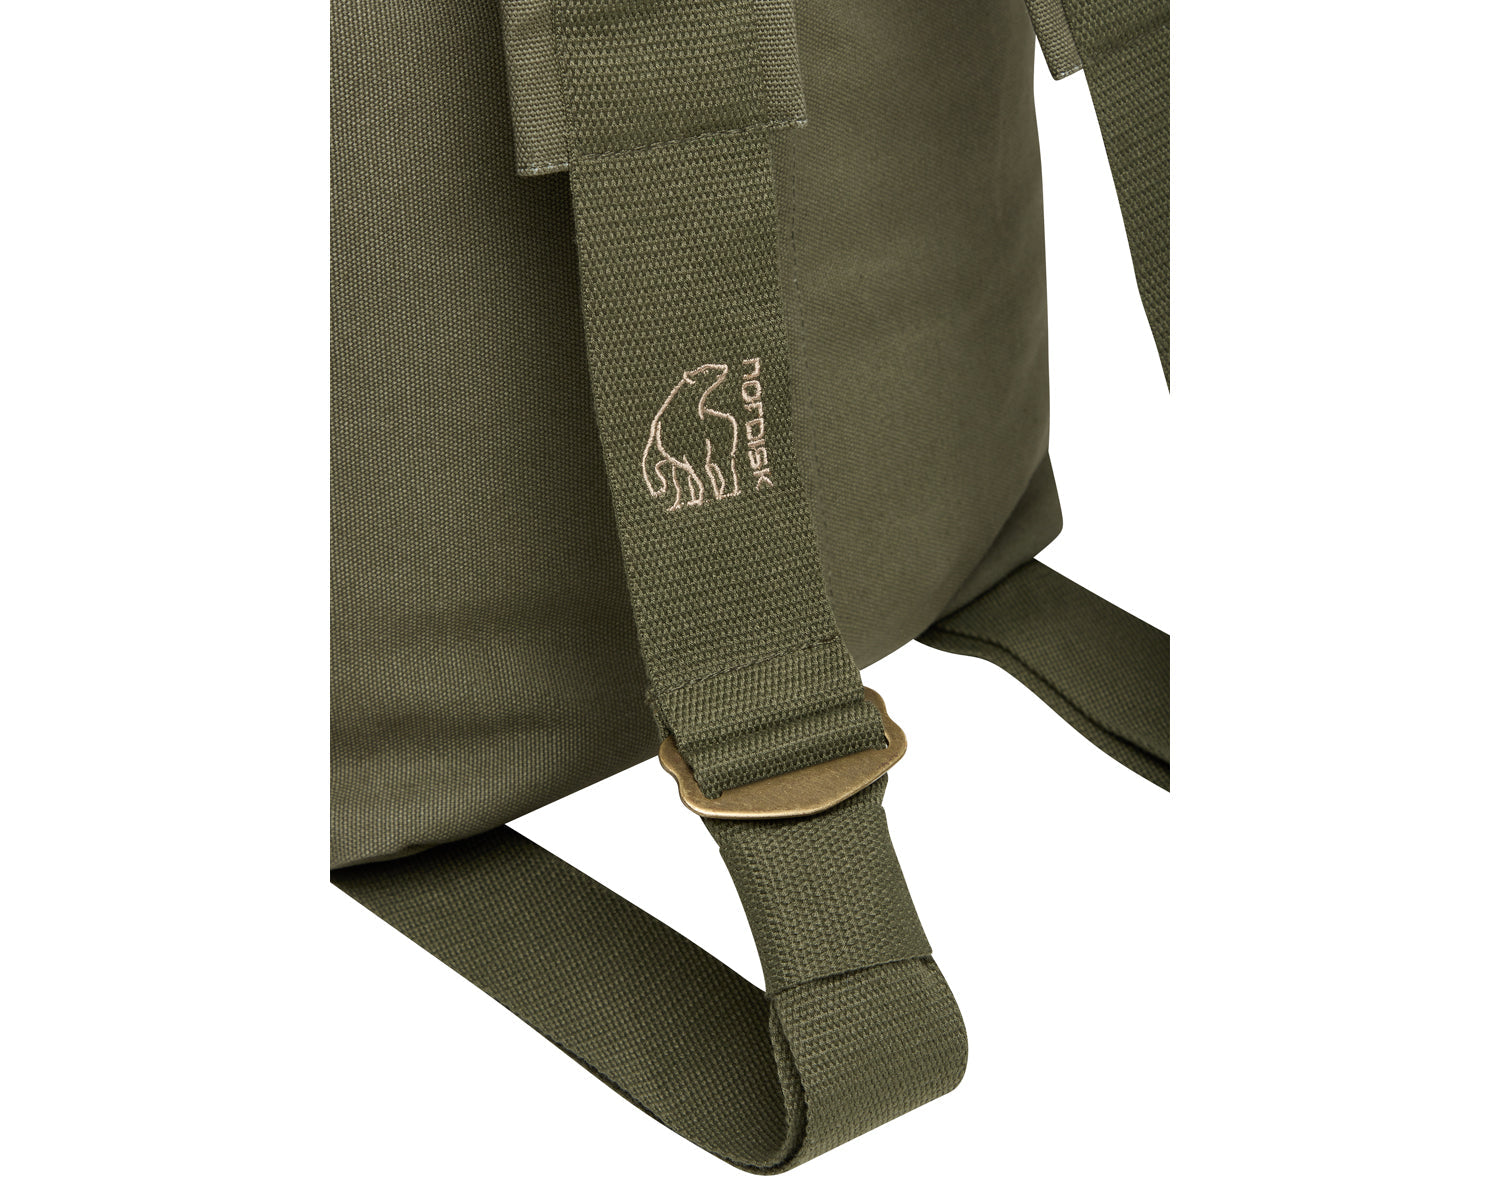 Kongsberg 65 duffel bag - 65 L - Four Leaf Clover